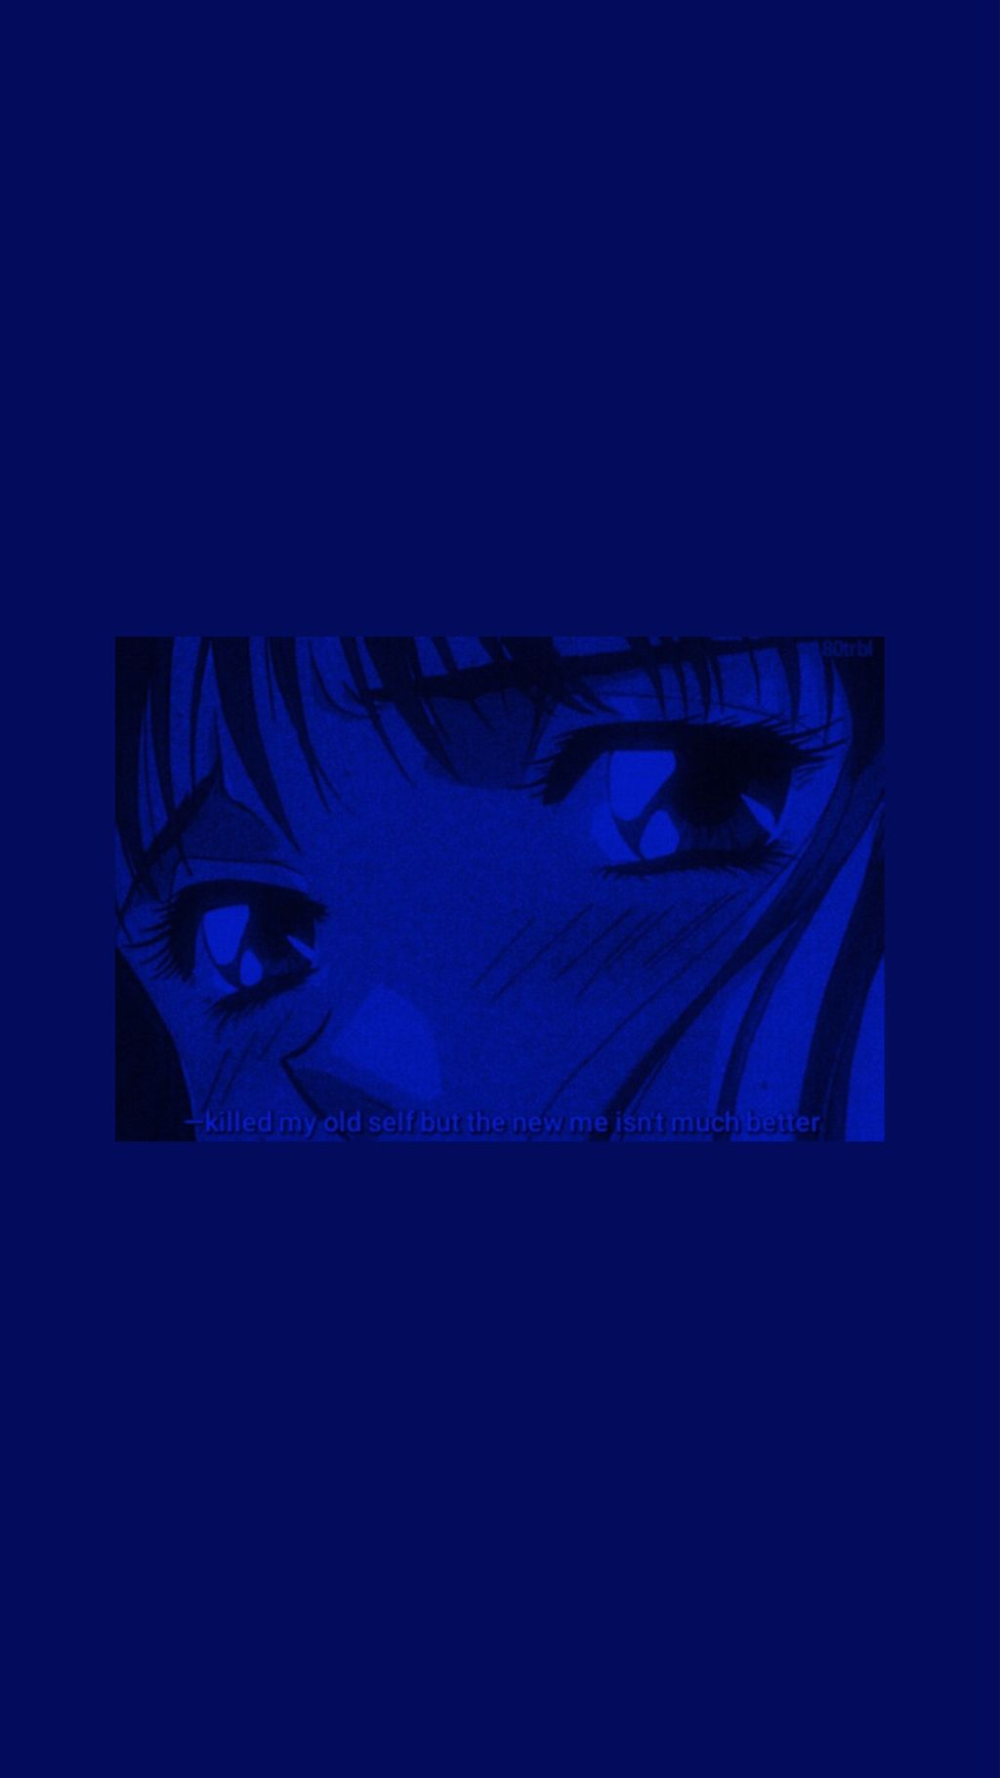 Blue Anime Aesthetic Dark Wallpaper HD